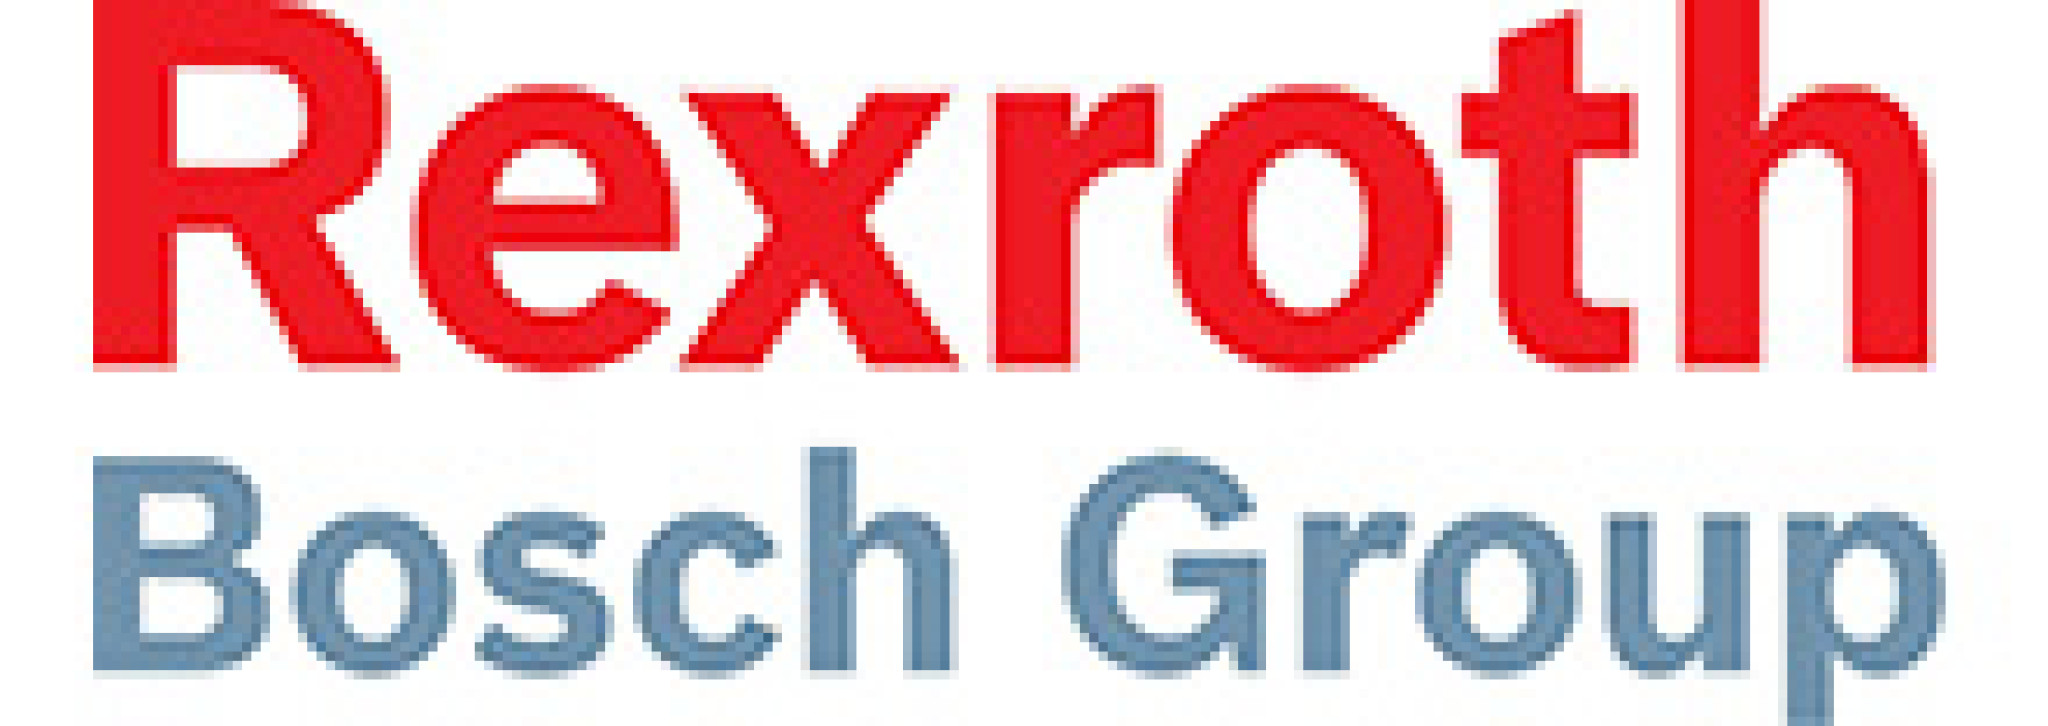 logo_bosch_rexroth_ltda.jpg